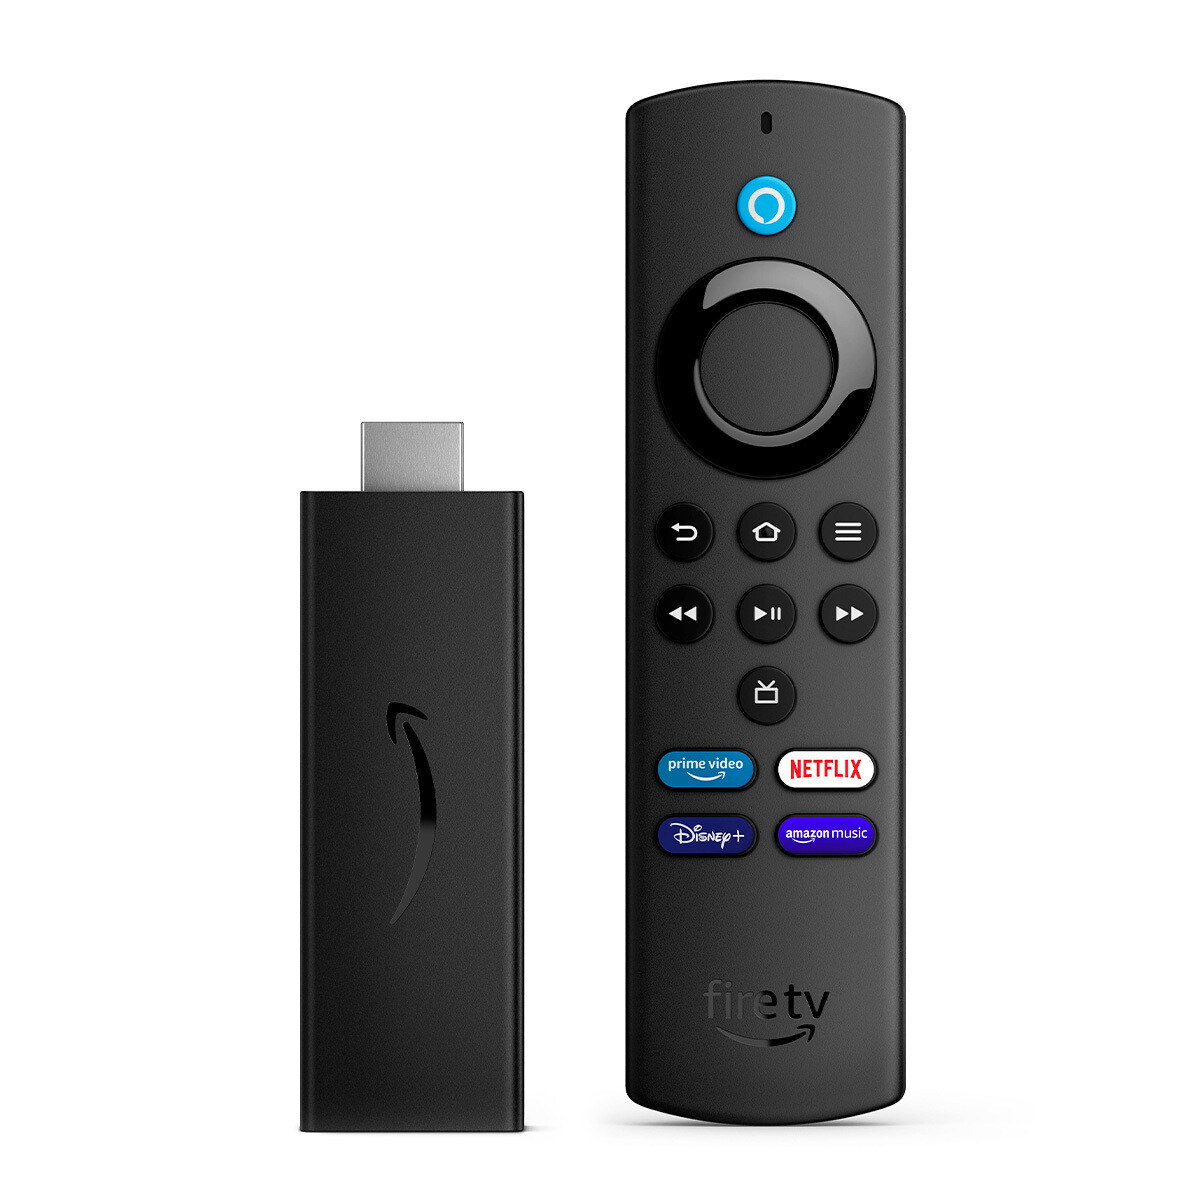 Reproductor Streaming Amazon Fire TV Stick Lite Full HD con Control de Voz Alexa - Negro 